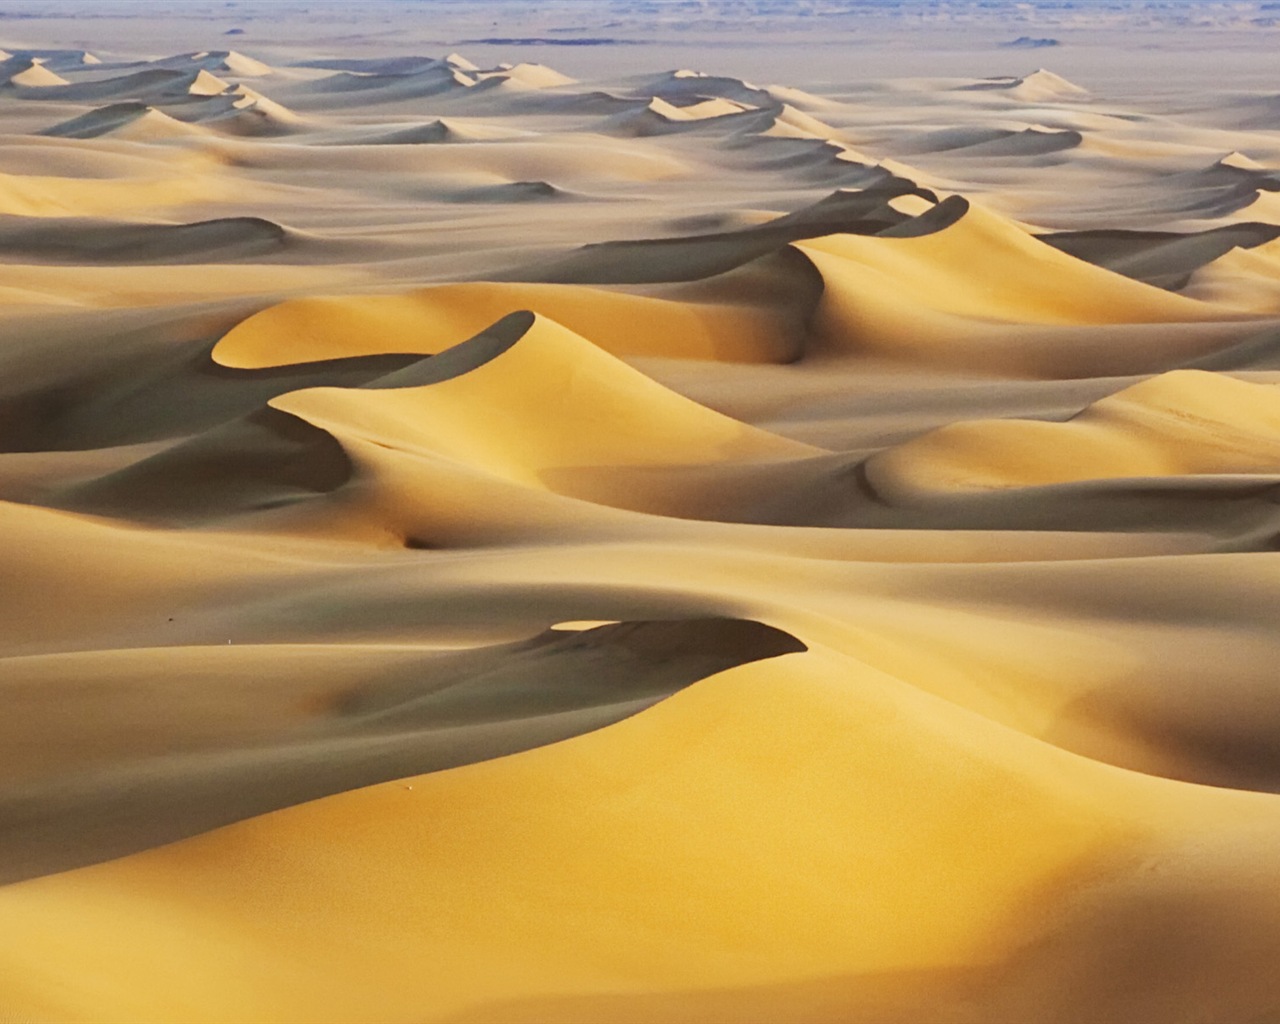 Les déserts chauds et arides, de Windows 8 fonds d'écran widescreen panoramique #4 - 1280x1024